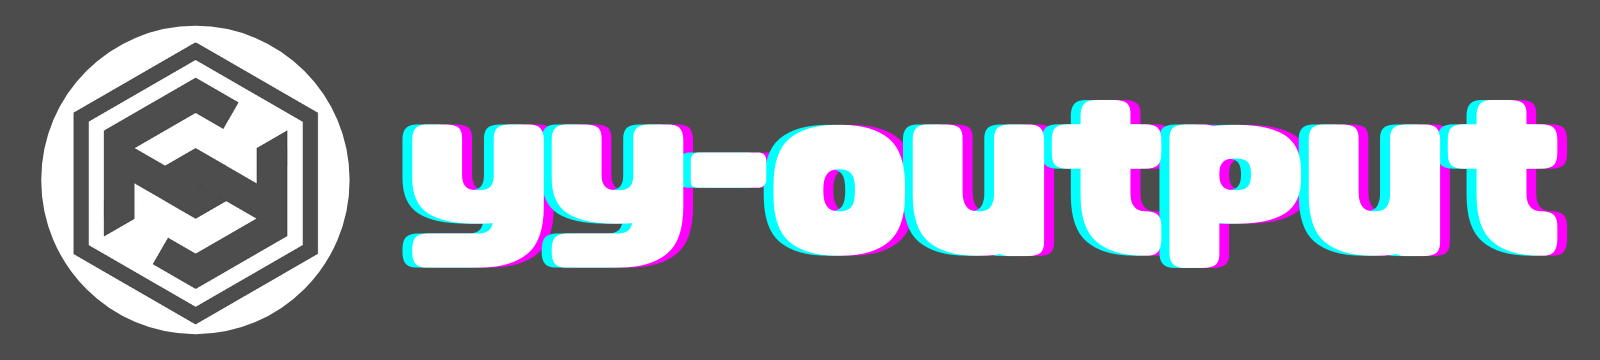 yy-output